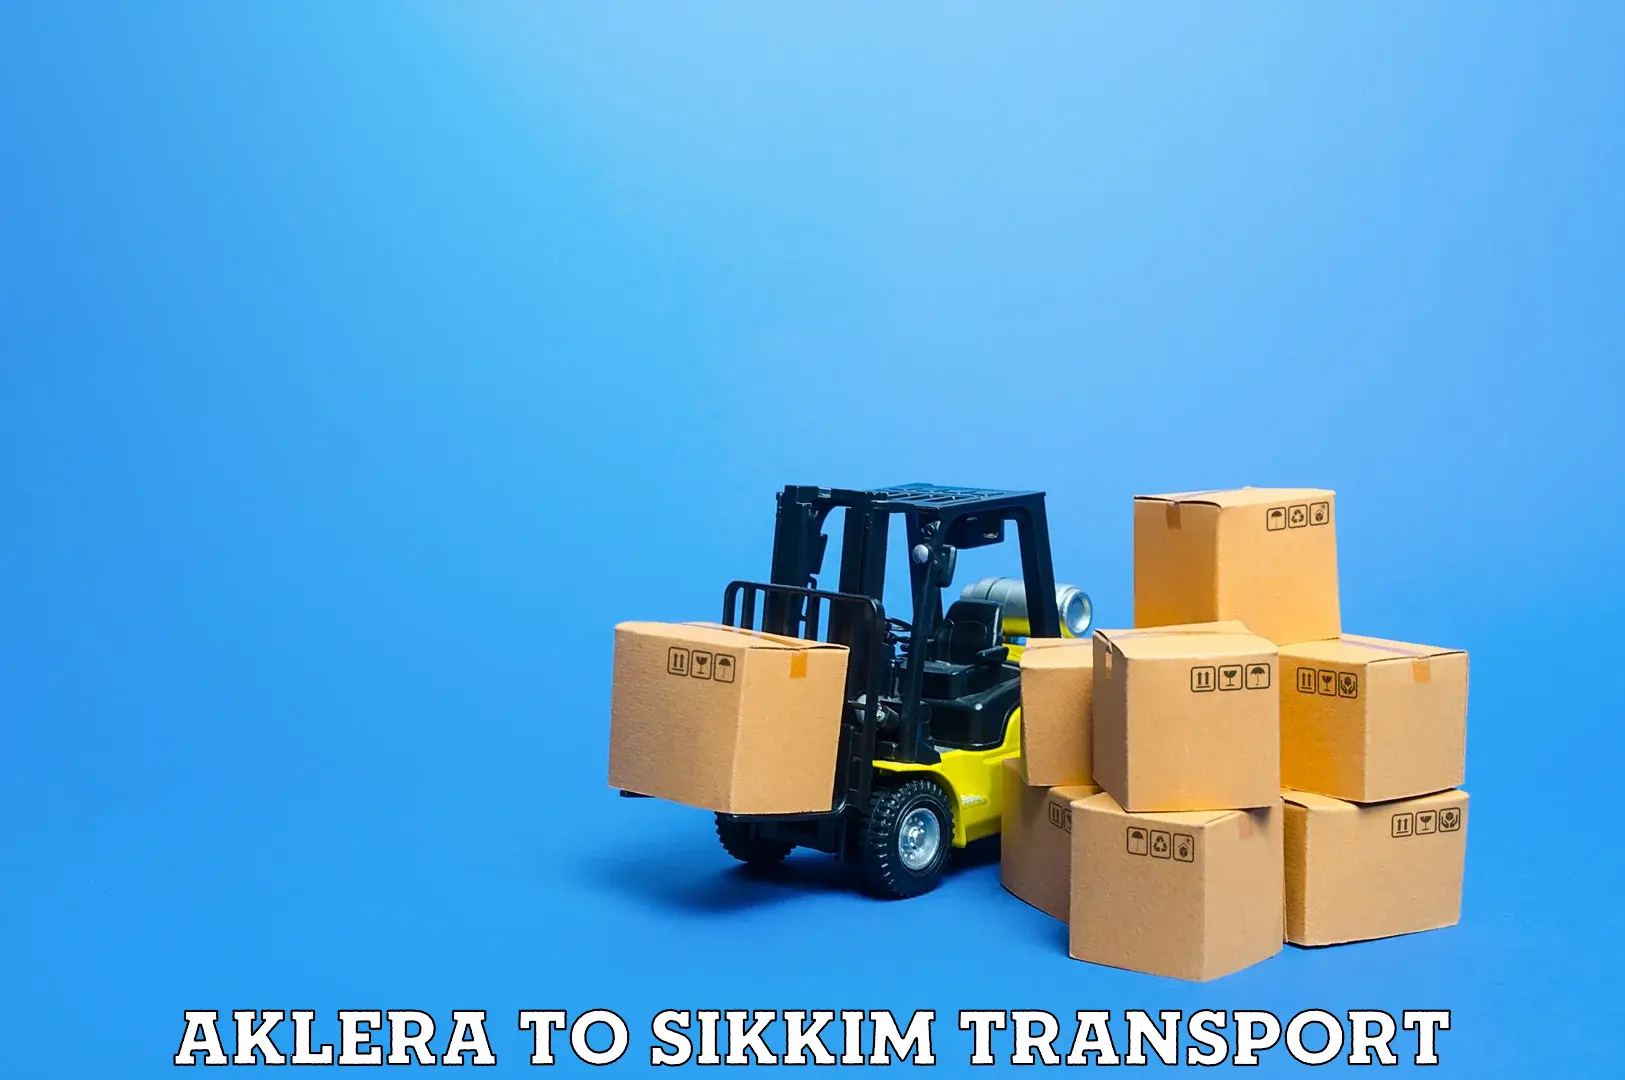 Shipping partner Aklera to Mangan